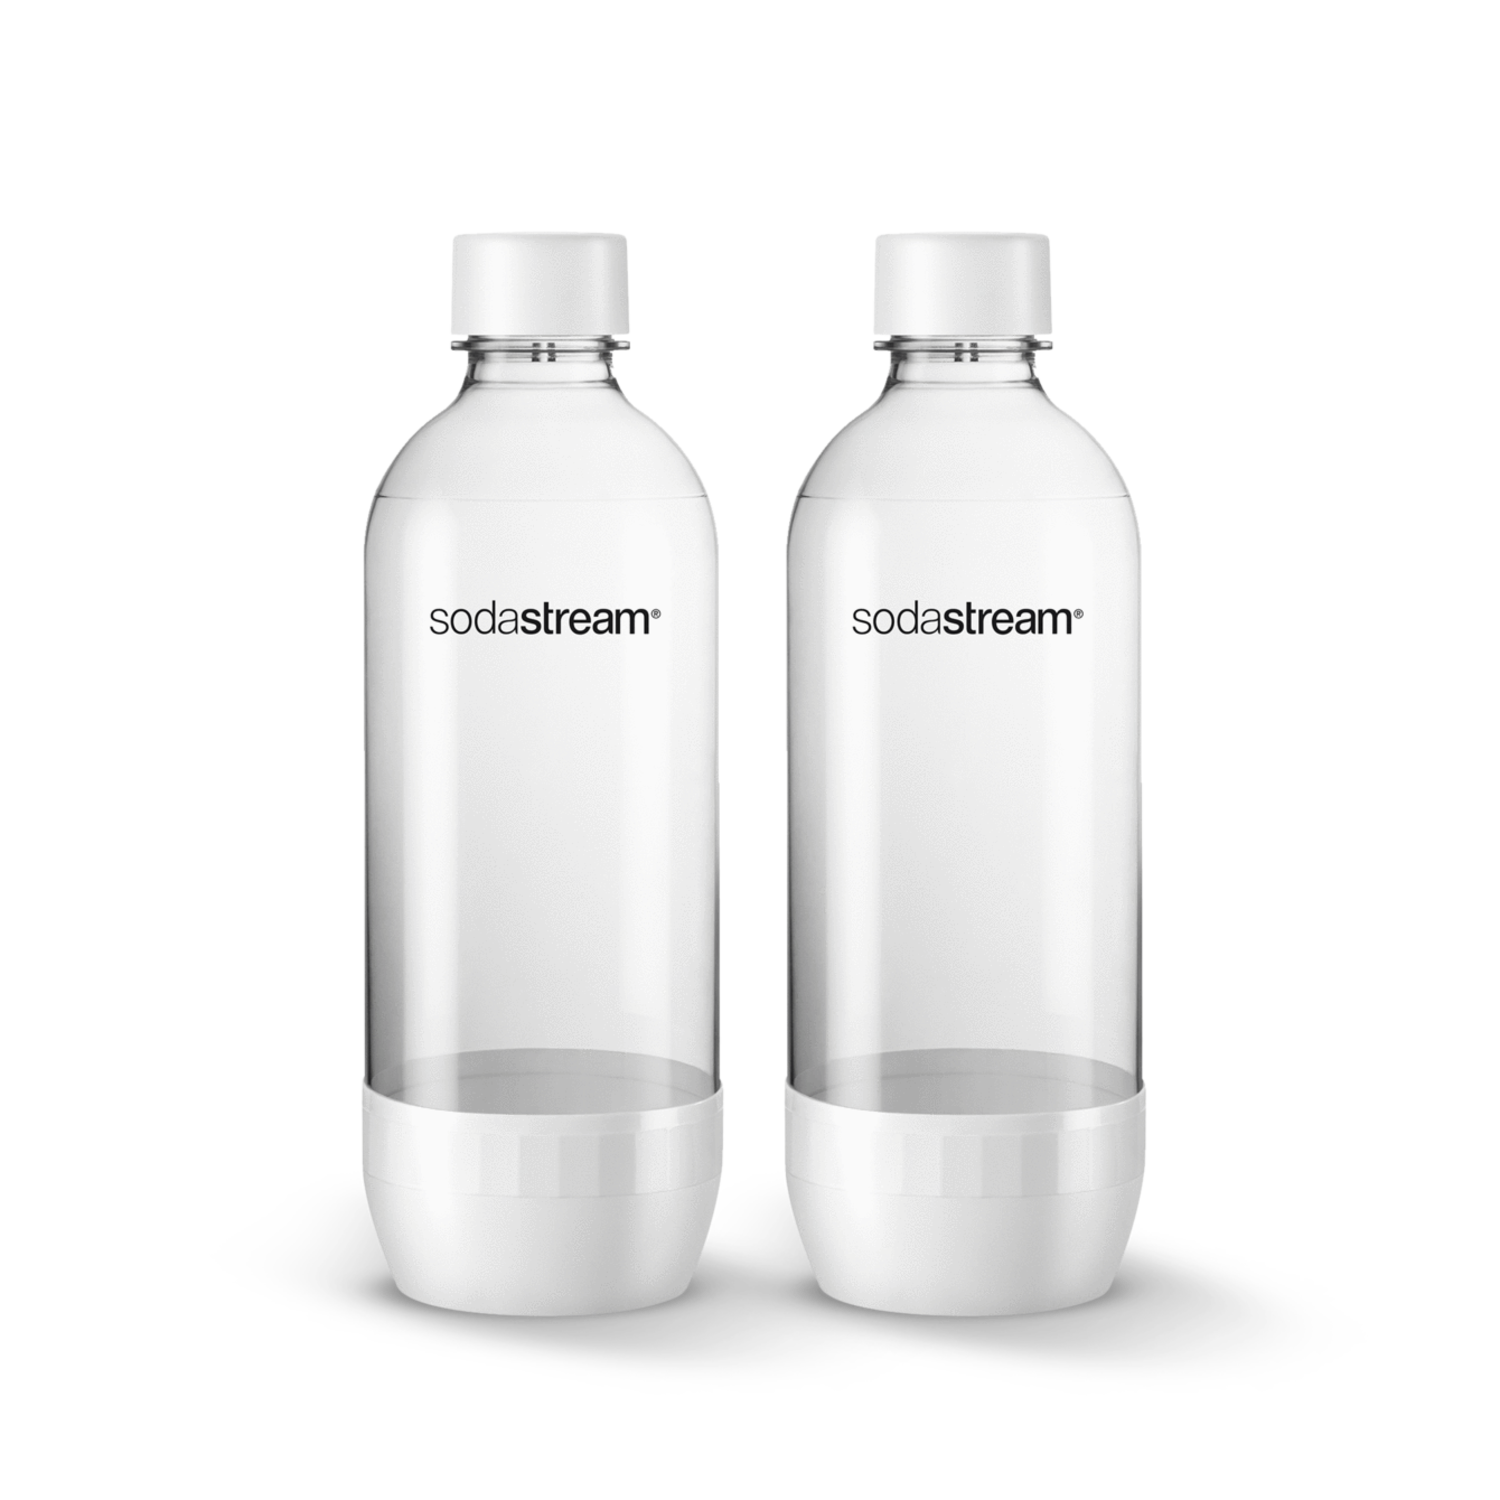 Sodastream 1 liter White Sodastream Bottles set of 2 - Whisk